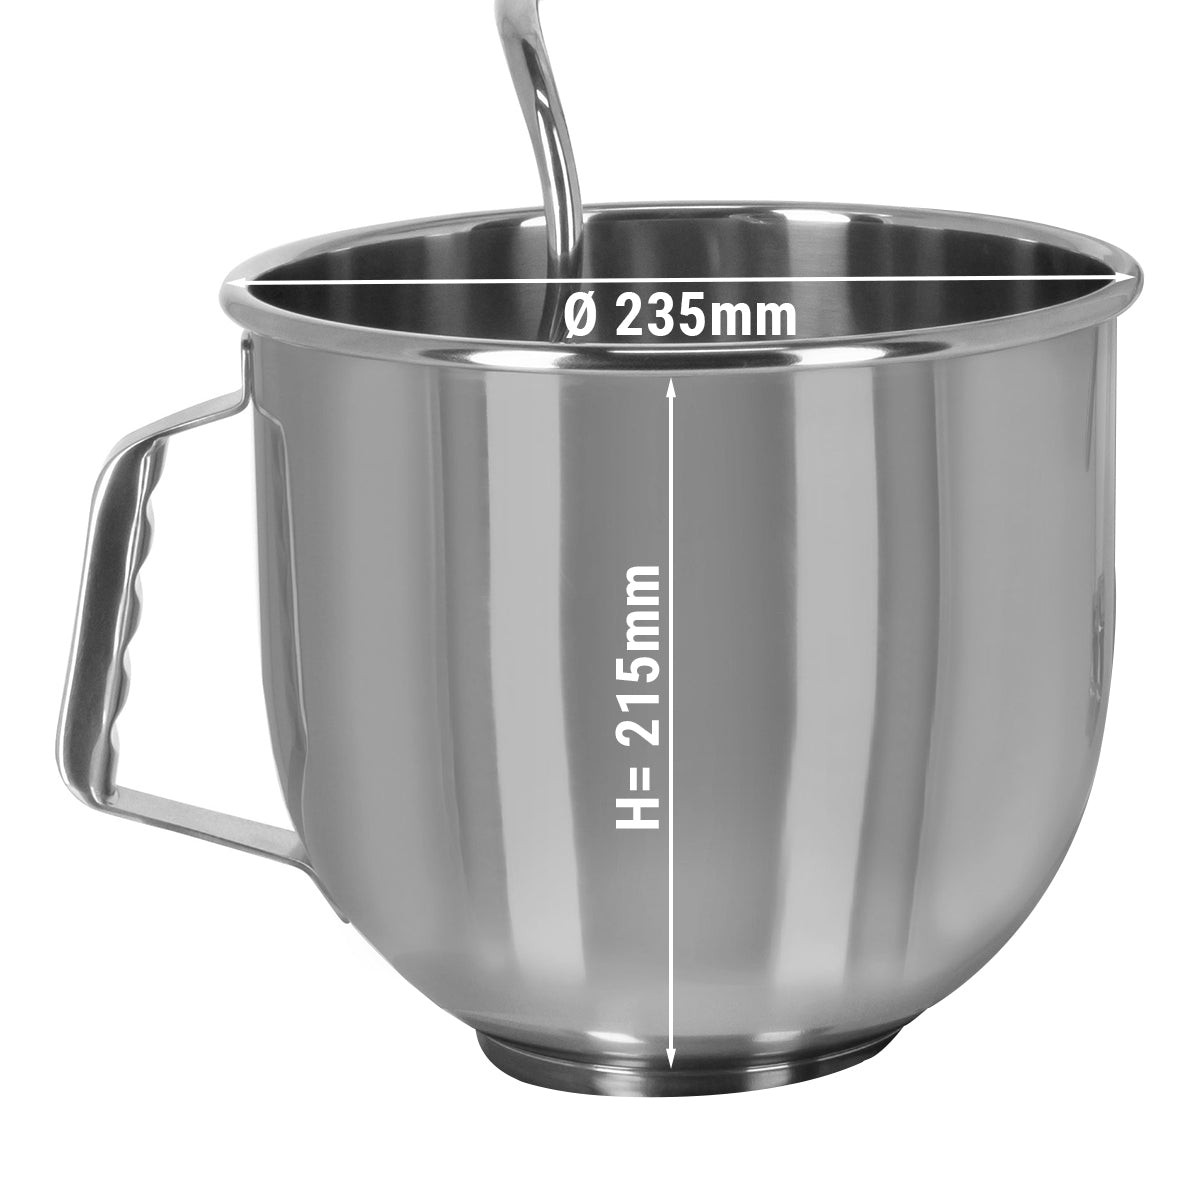 Mikser - kjøkkenmaskin - eltemaskin - 7 liter - grå